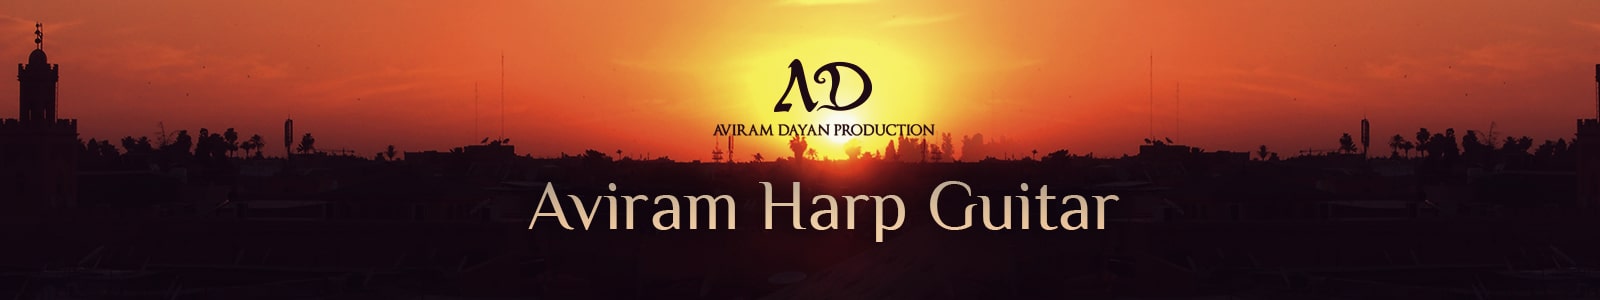 Aviram Harp Guitar by Aviram Dayan Production